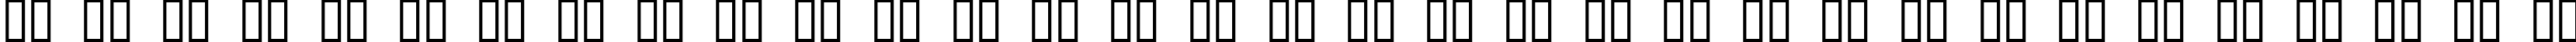 Пример написания русского алфавита шрифтом Holy Empire